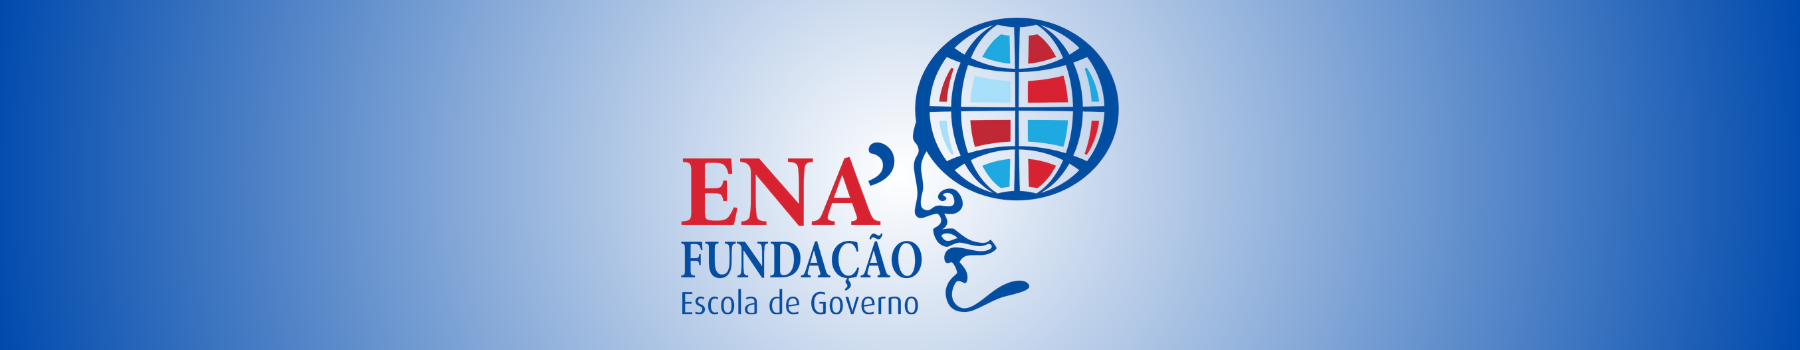 Faixa superior de fundo azul com gradiente ao centro com a logo da Fundação Escola de Governo - ENA.